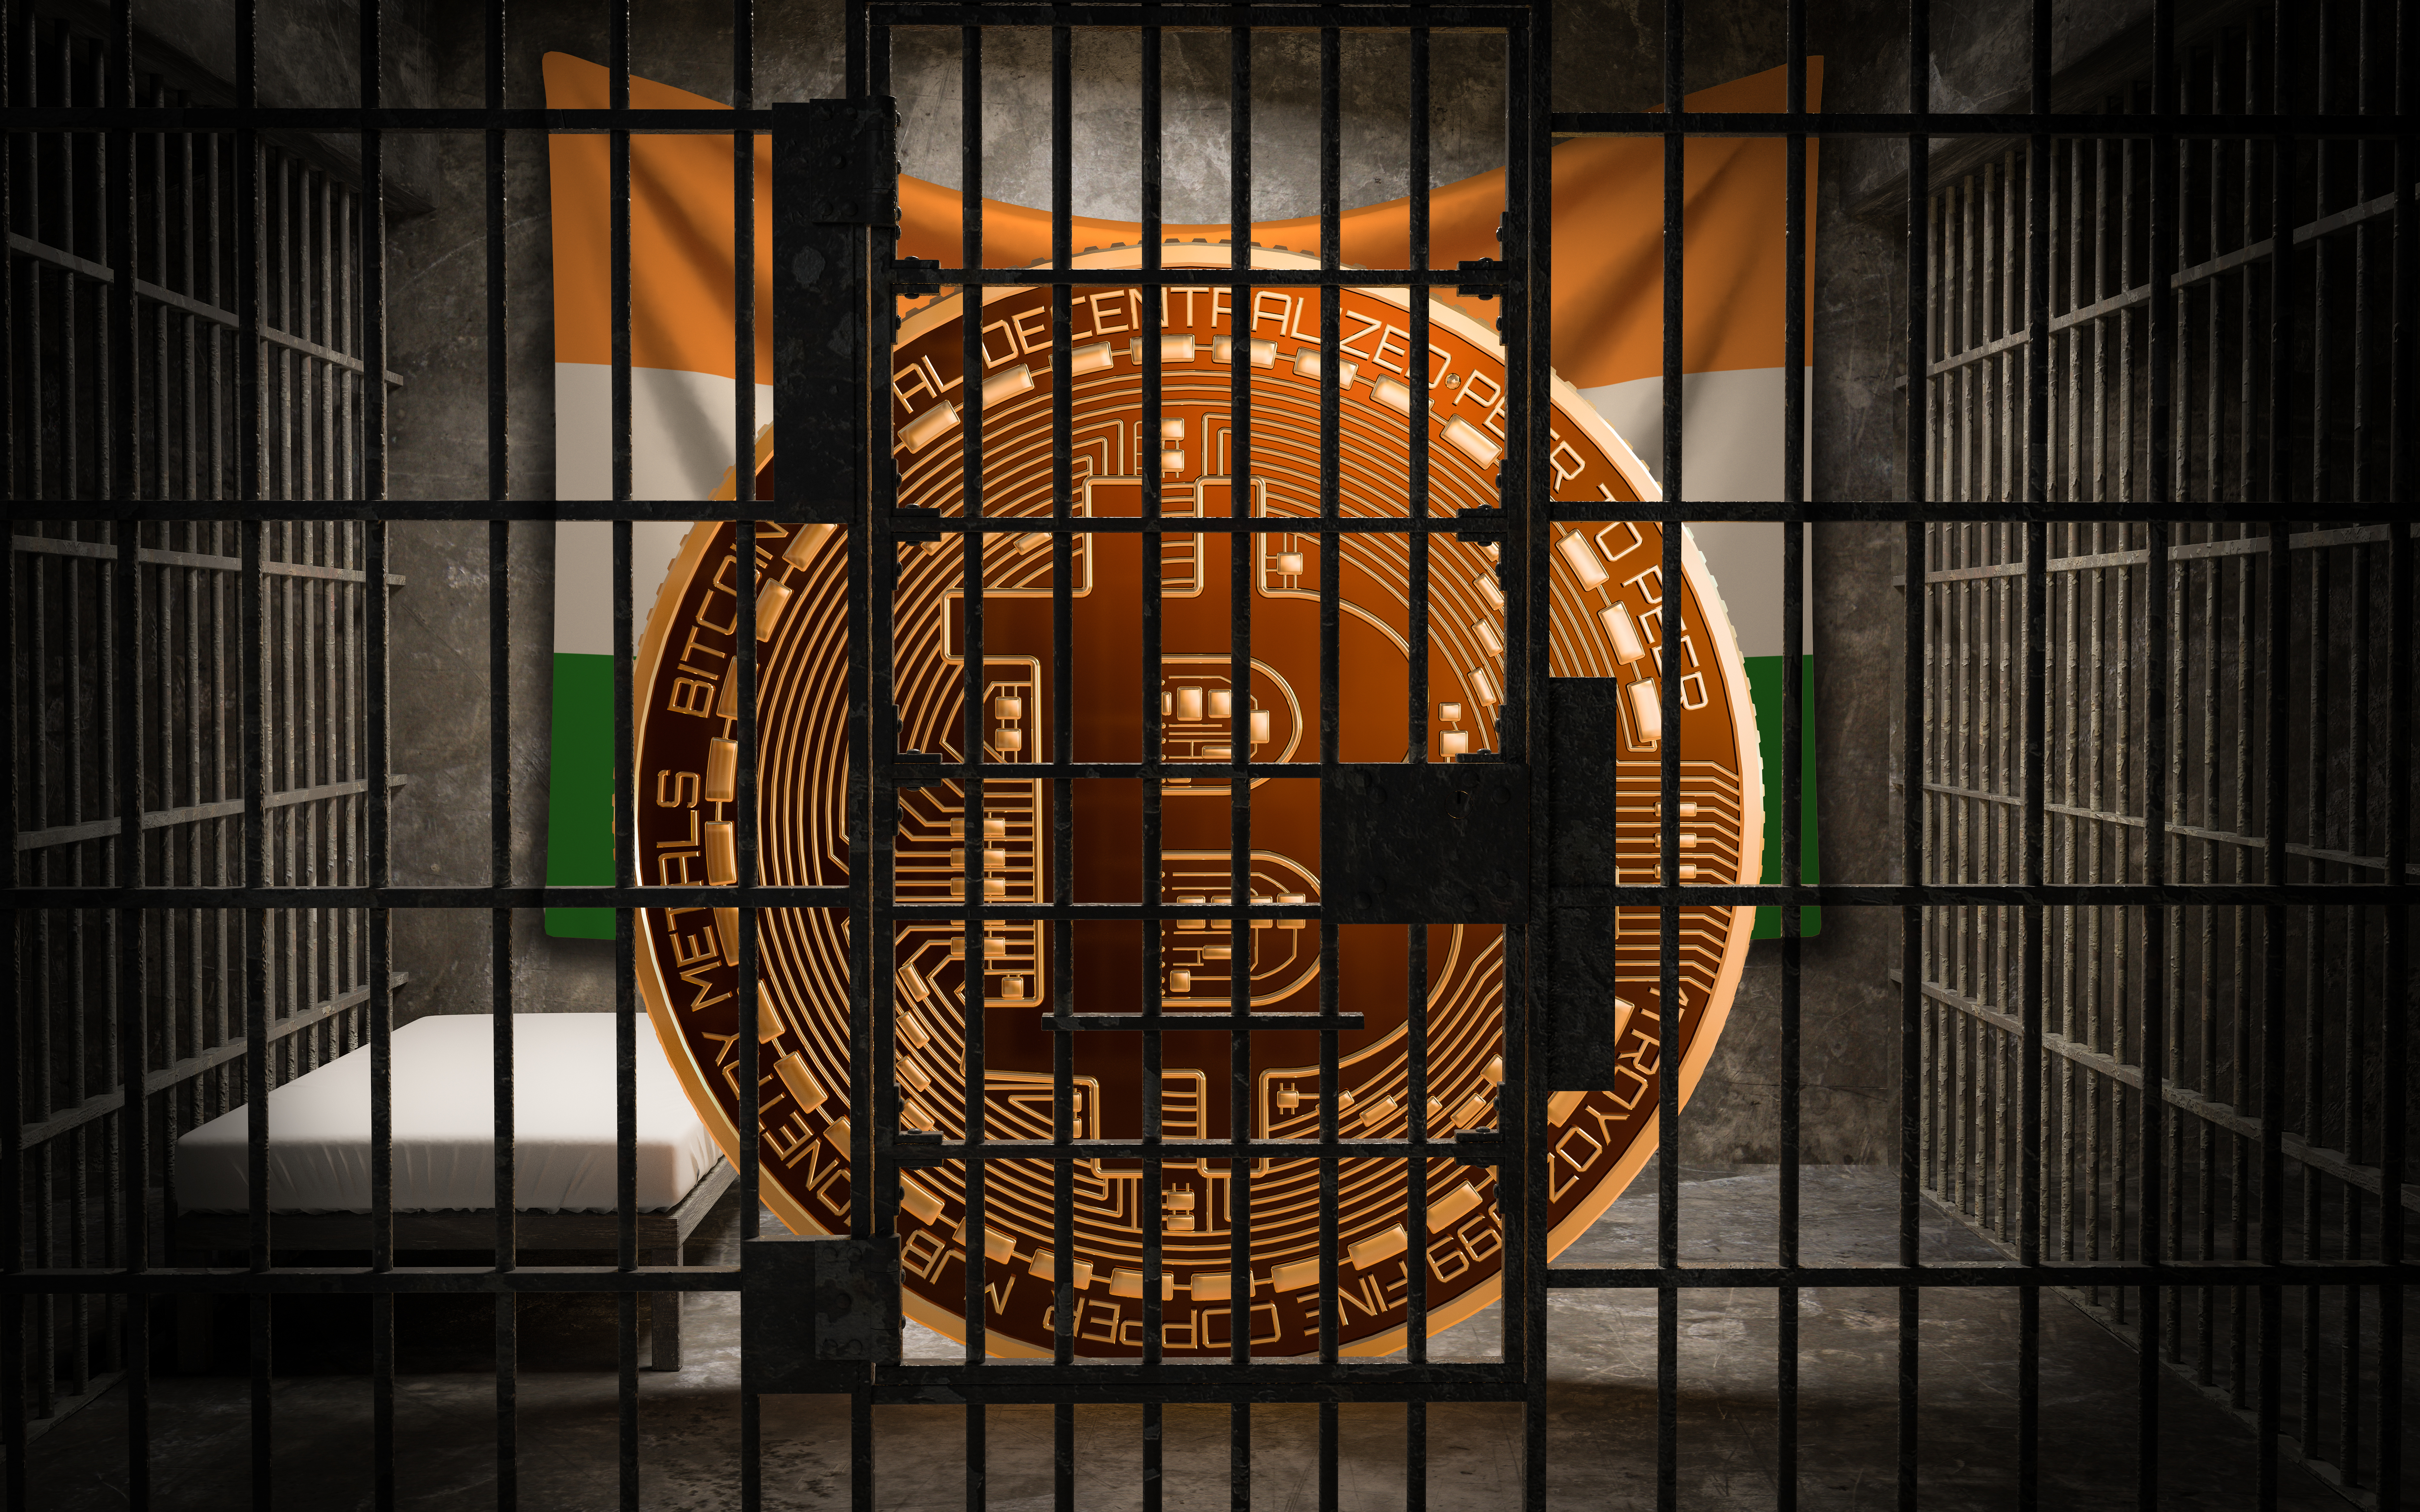    A Crypto Ban: “Up to Congress”